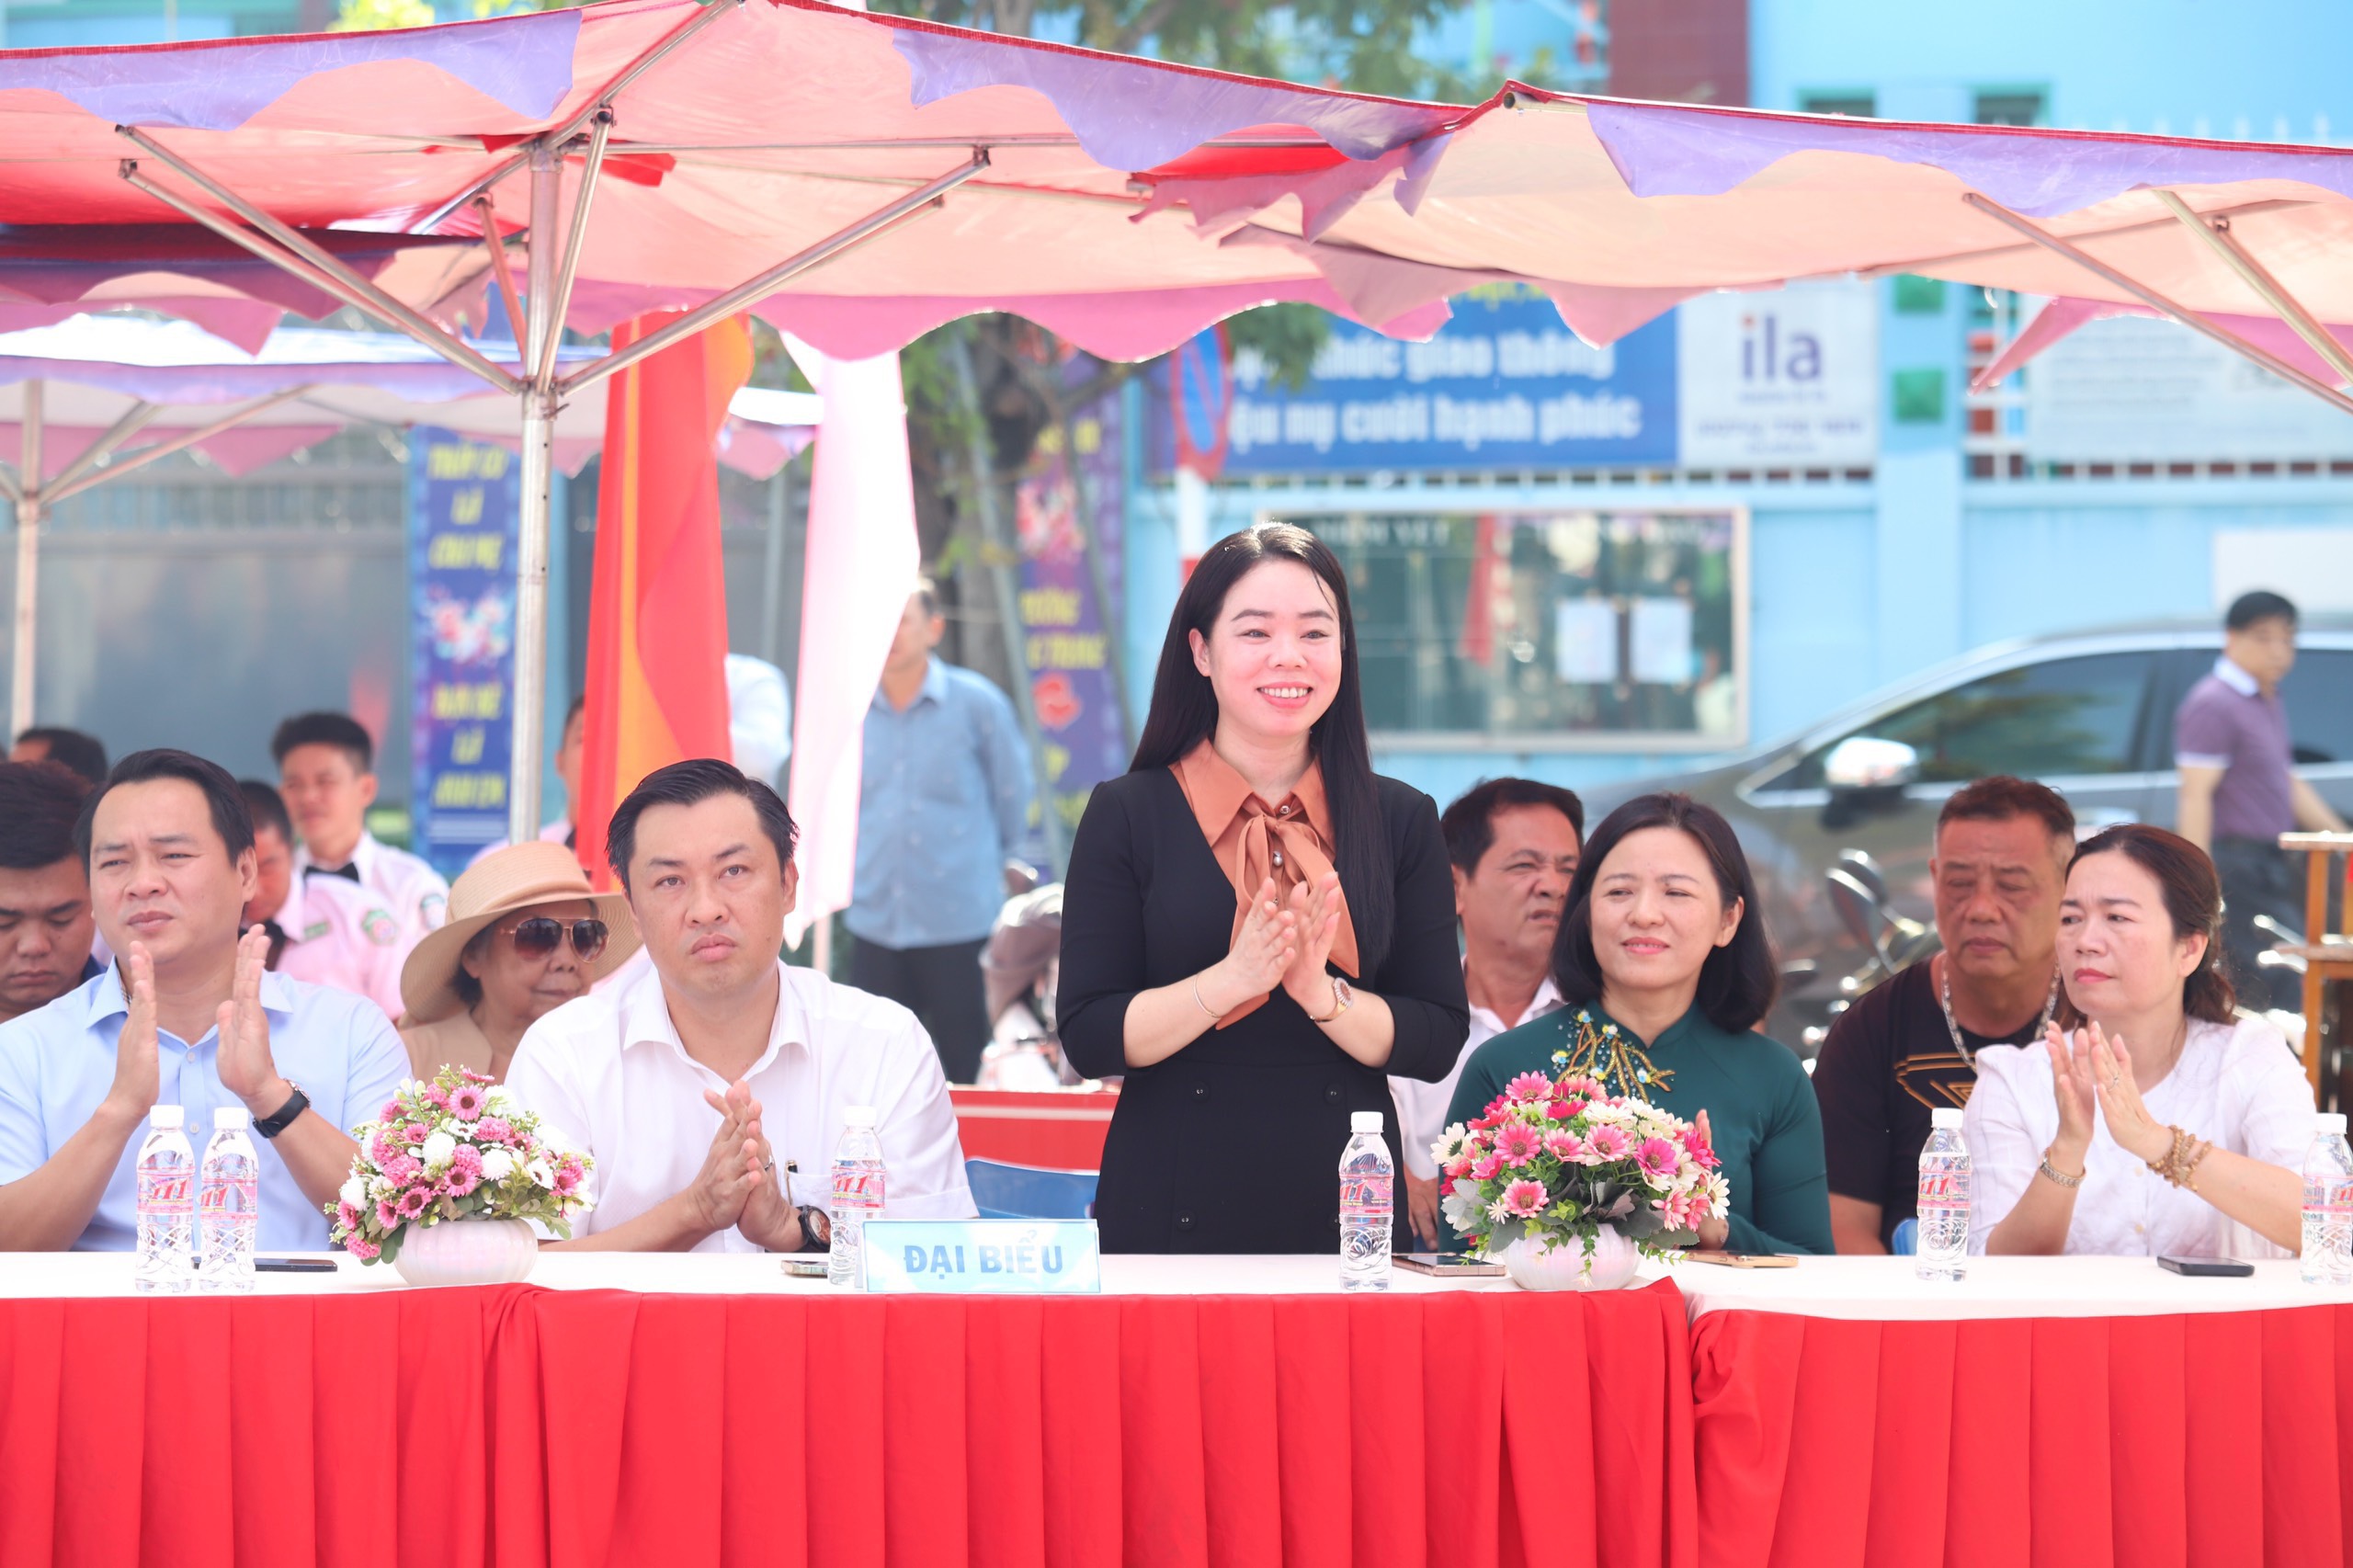 Bà Nguyễn Thị Kim Nguyên, Phó Trưởng Ban Tuyên giáo Tỉnh uỷ Bình Dương cùng các đại biểu đến tham dự Lễ khai mạc giải